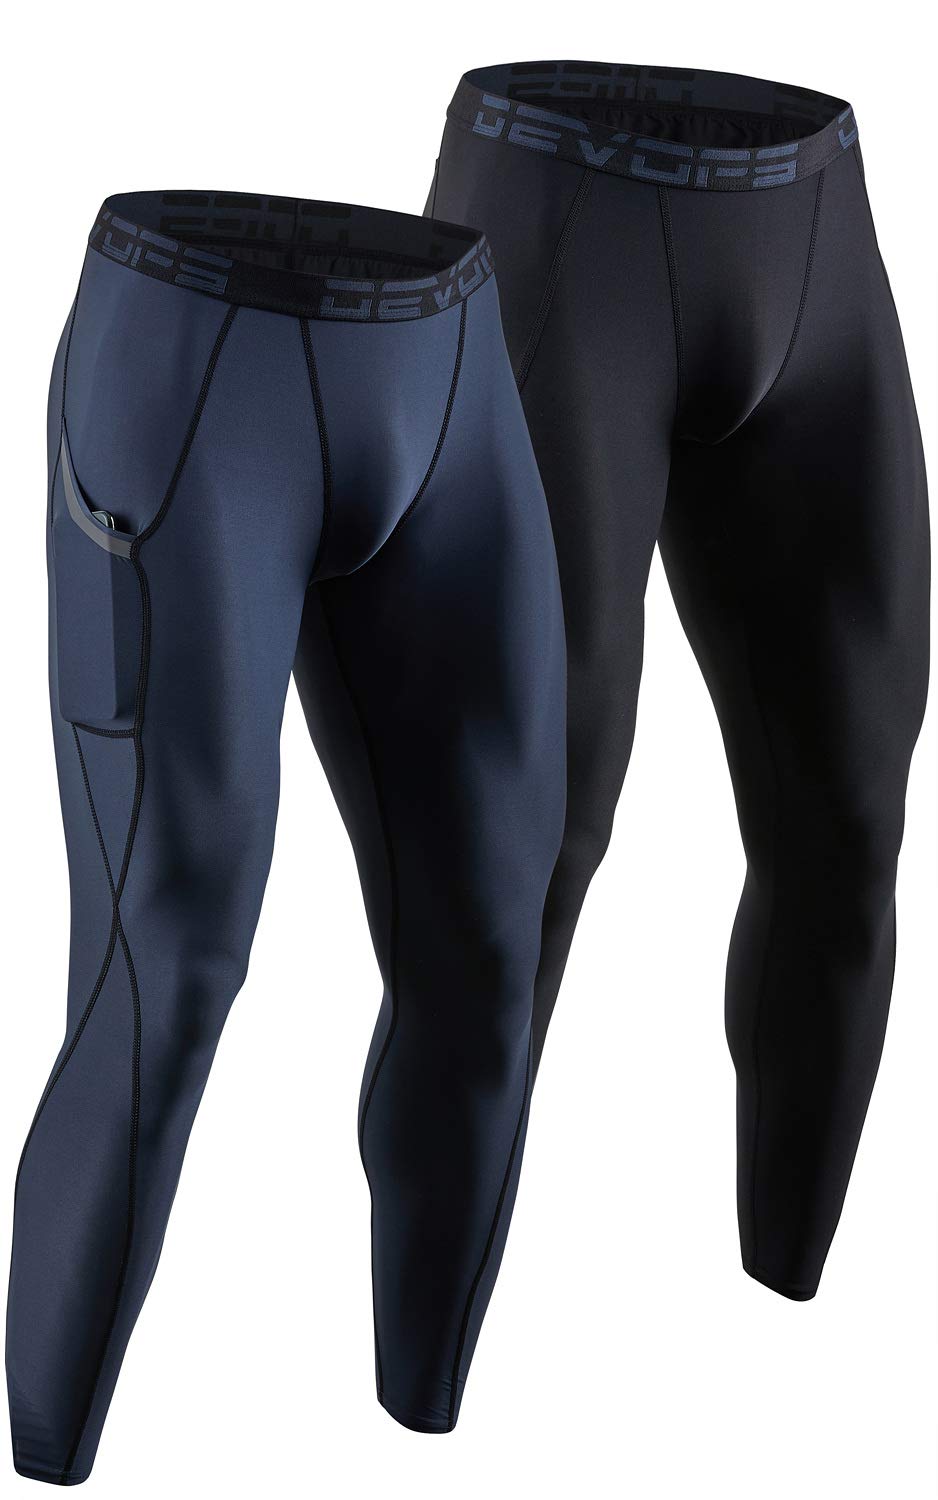 DEVOPS 2 or 3 Pack Men's Compression Pants Athletic Leggings with  Pocket/Non-Pocket Medium 2# (Pocket) - Black / Charcoal